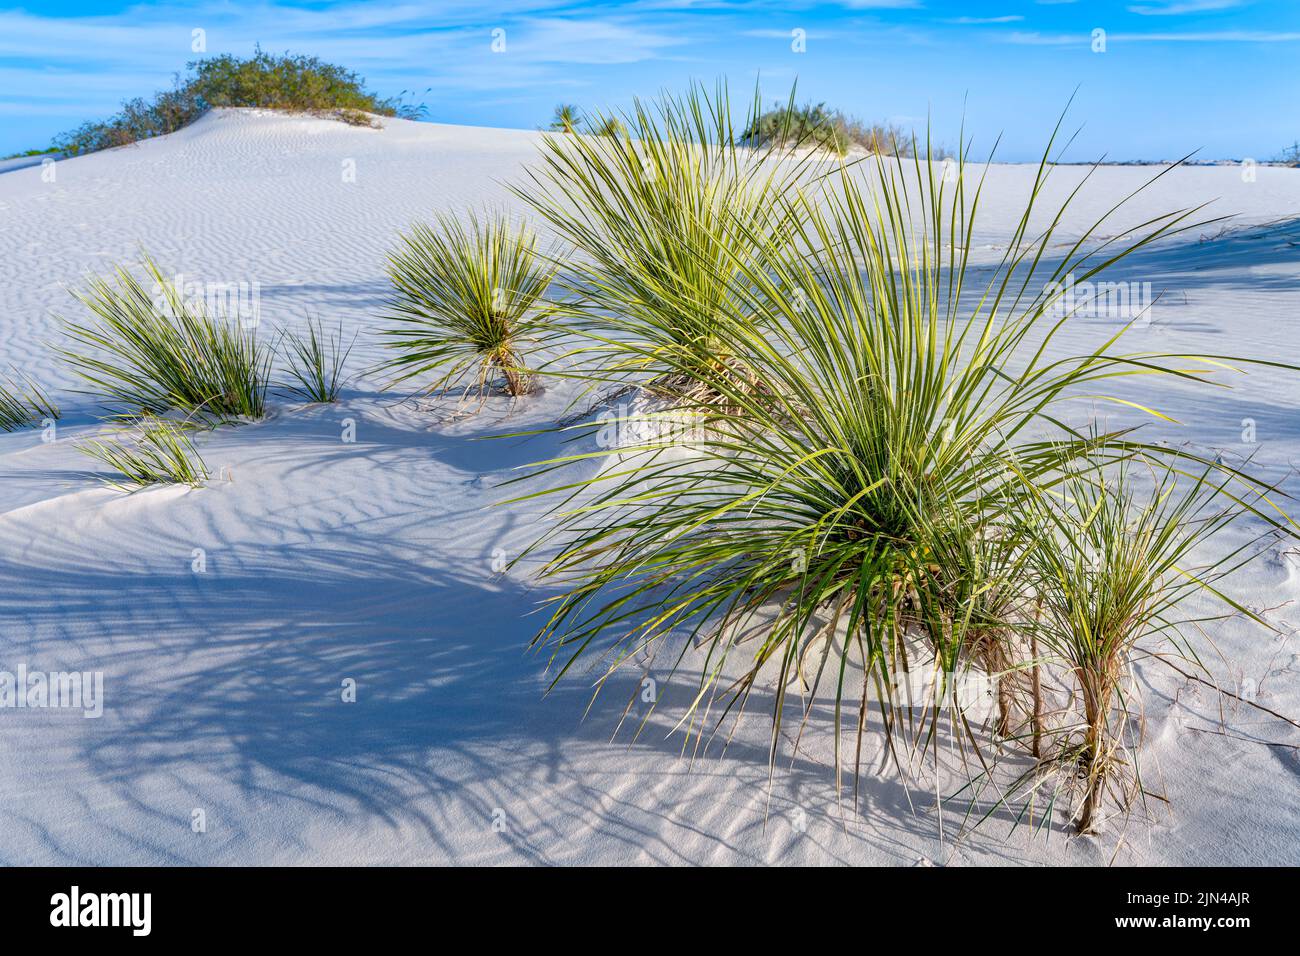 Sentier nature dune Life, parc national de White Sands, Nouveau-Mexique, États-Unis Banque D'Images